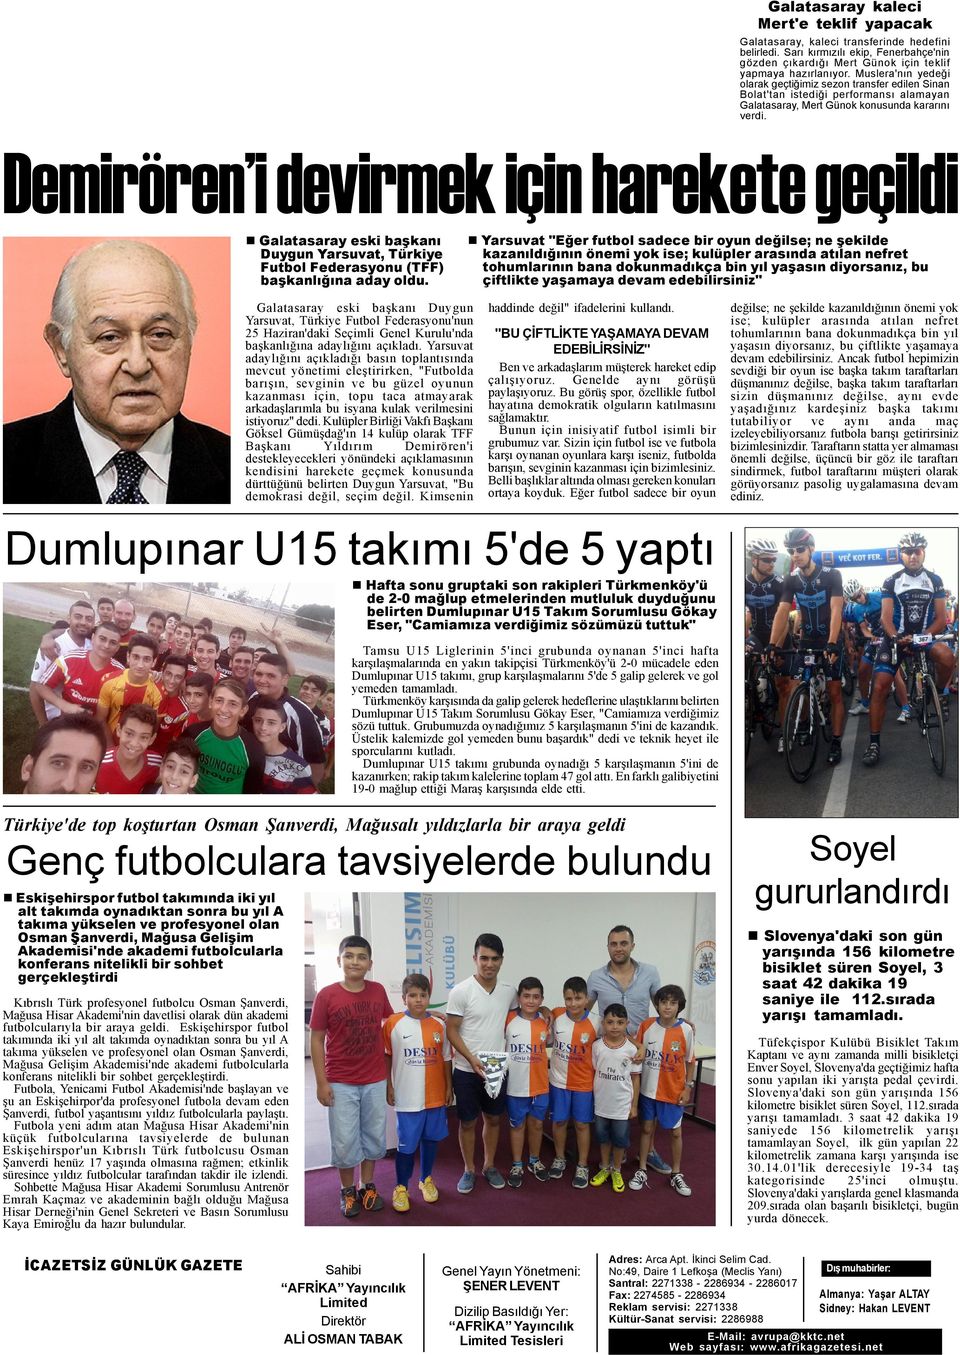 Demirören i devirmek için harekete geçildi Galatasaray eski baþkaný Duygun Yarsuvat, Türkiye Futbol Federasyonu (TFF) baþkanlýðýna aday oldu.